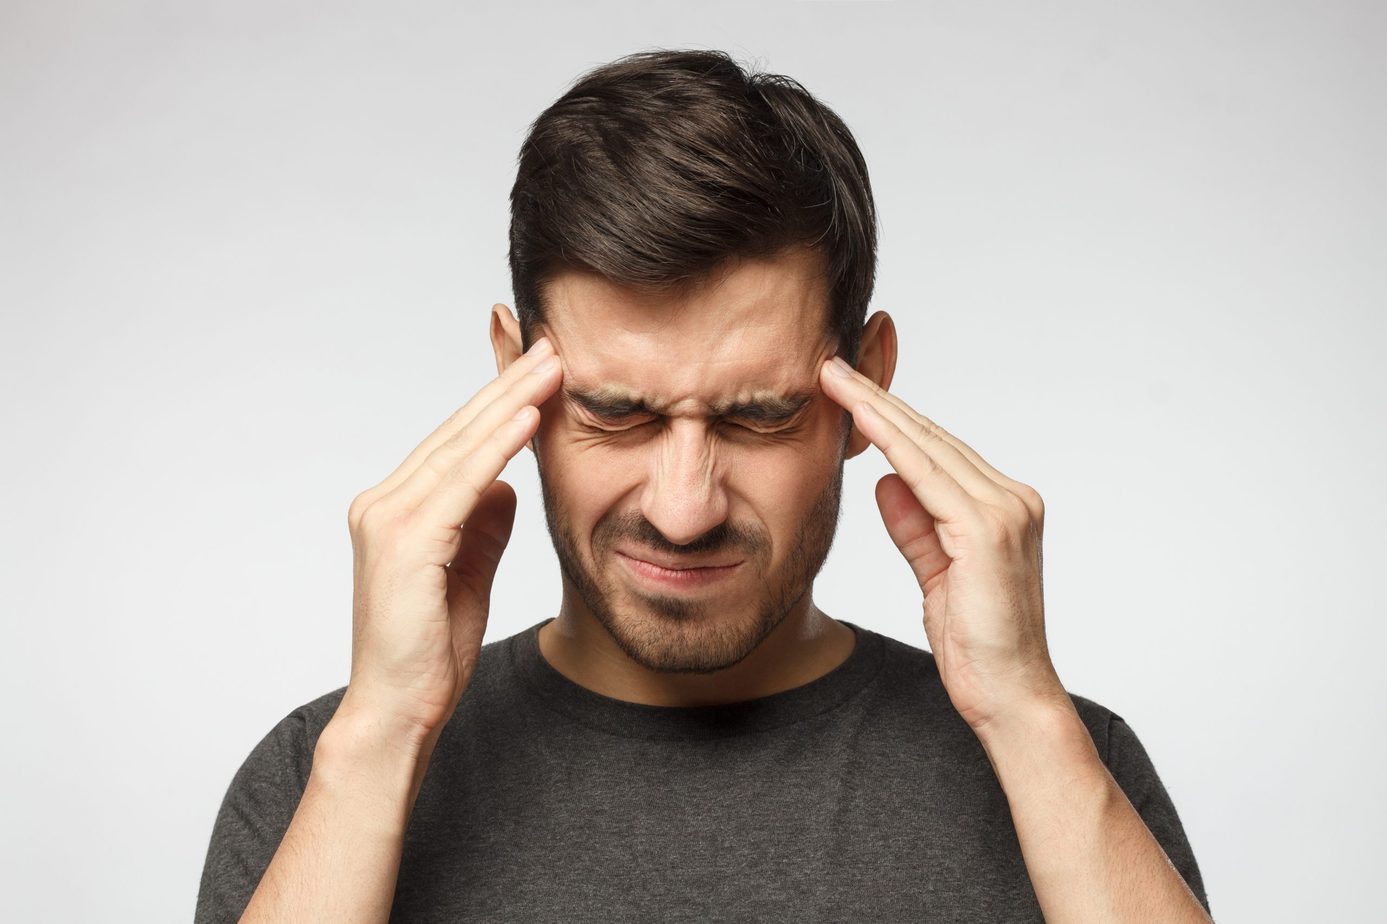 Home remedies for headaches